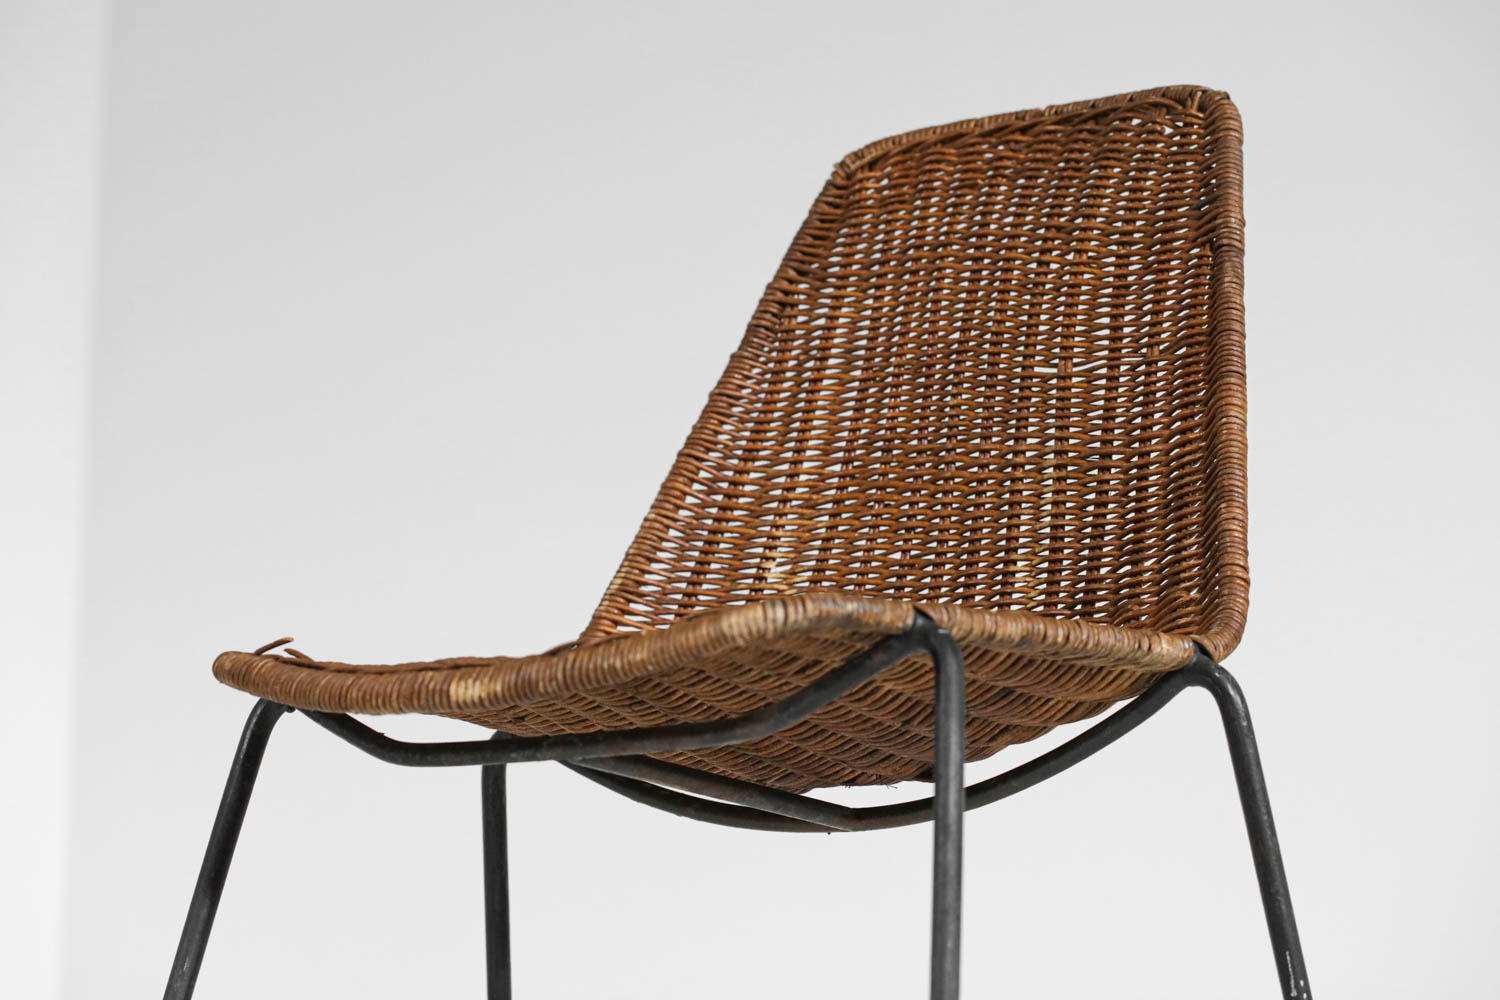 Paire de chaises rotin et métal Gian Franco Legler années 60 - G576